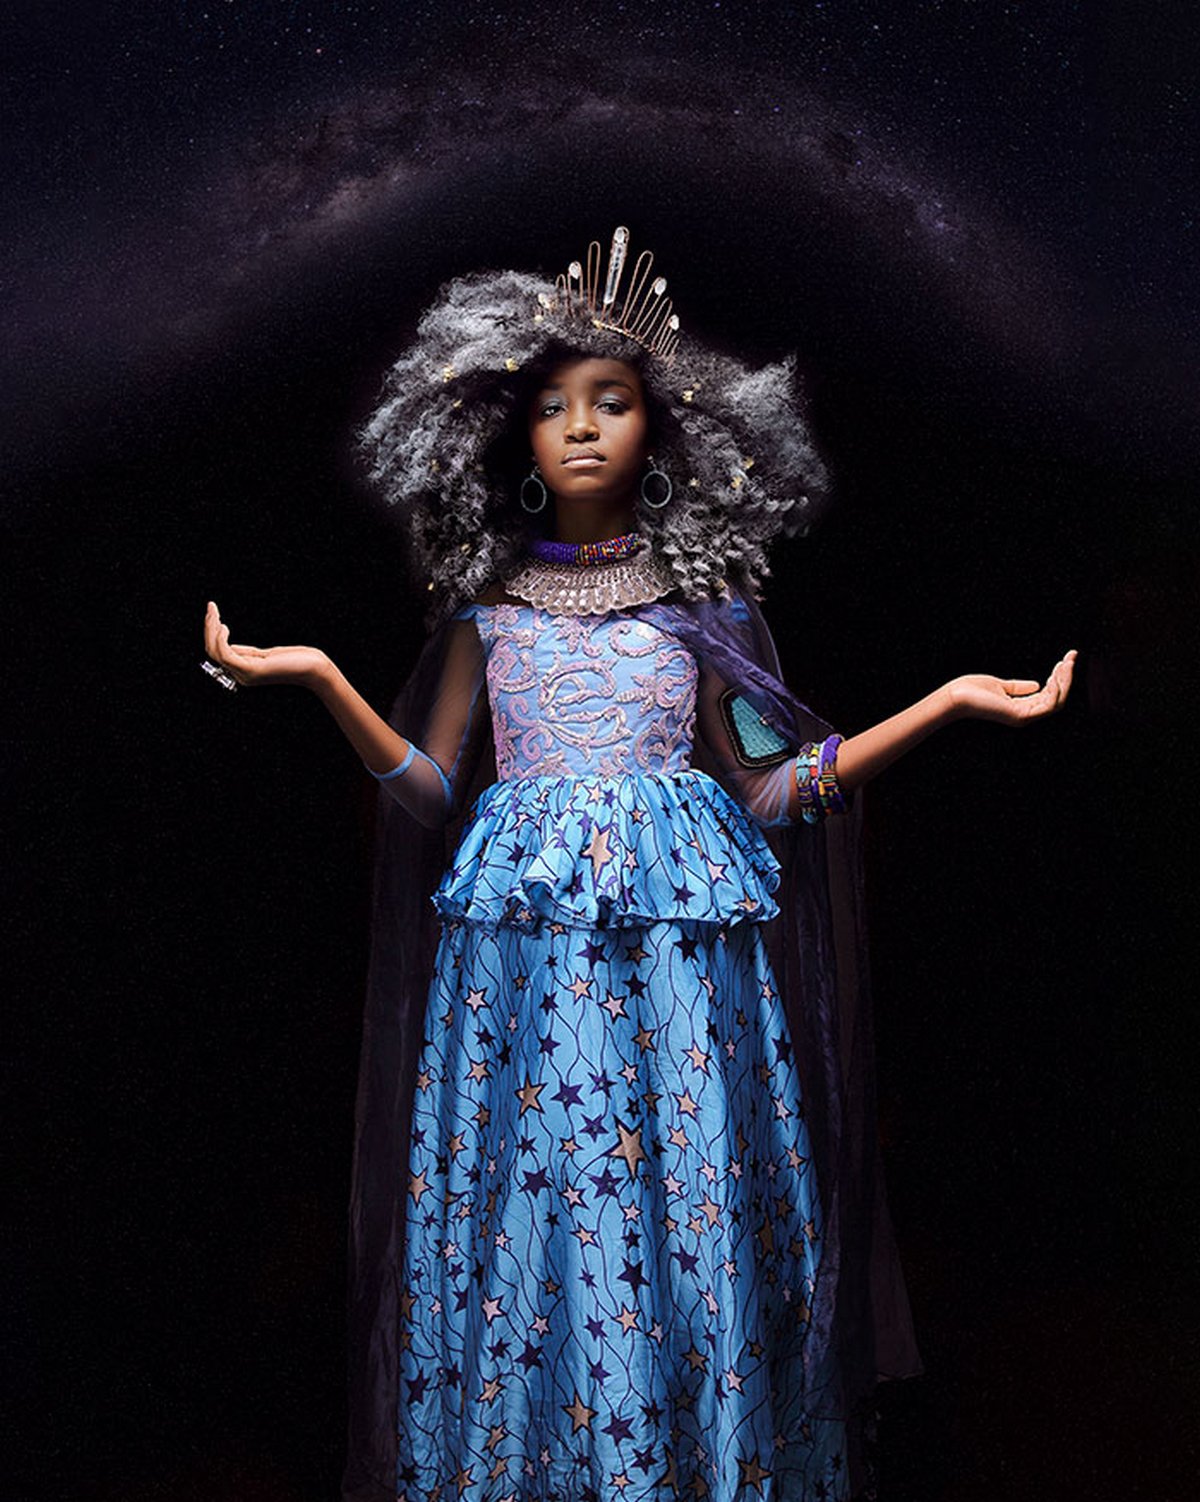 Ces magnifiques photos montrent à quoi ressembleraient les princesses Disney si elles étaient afro-américaines